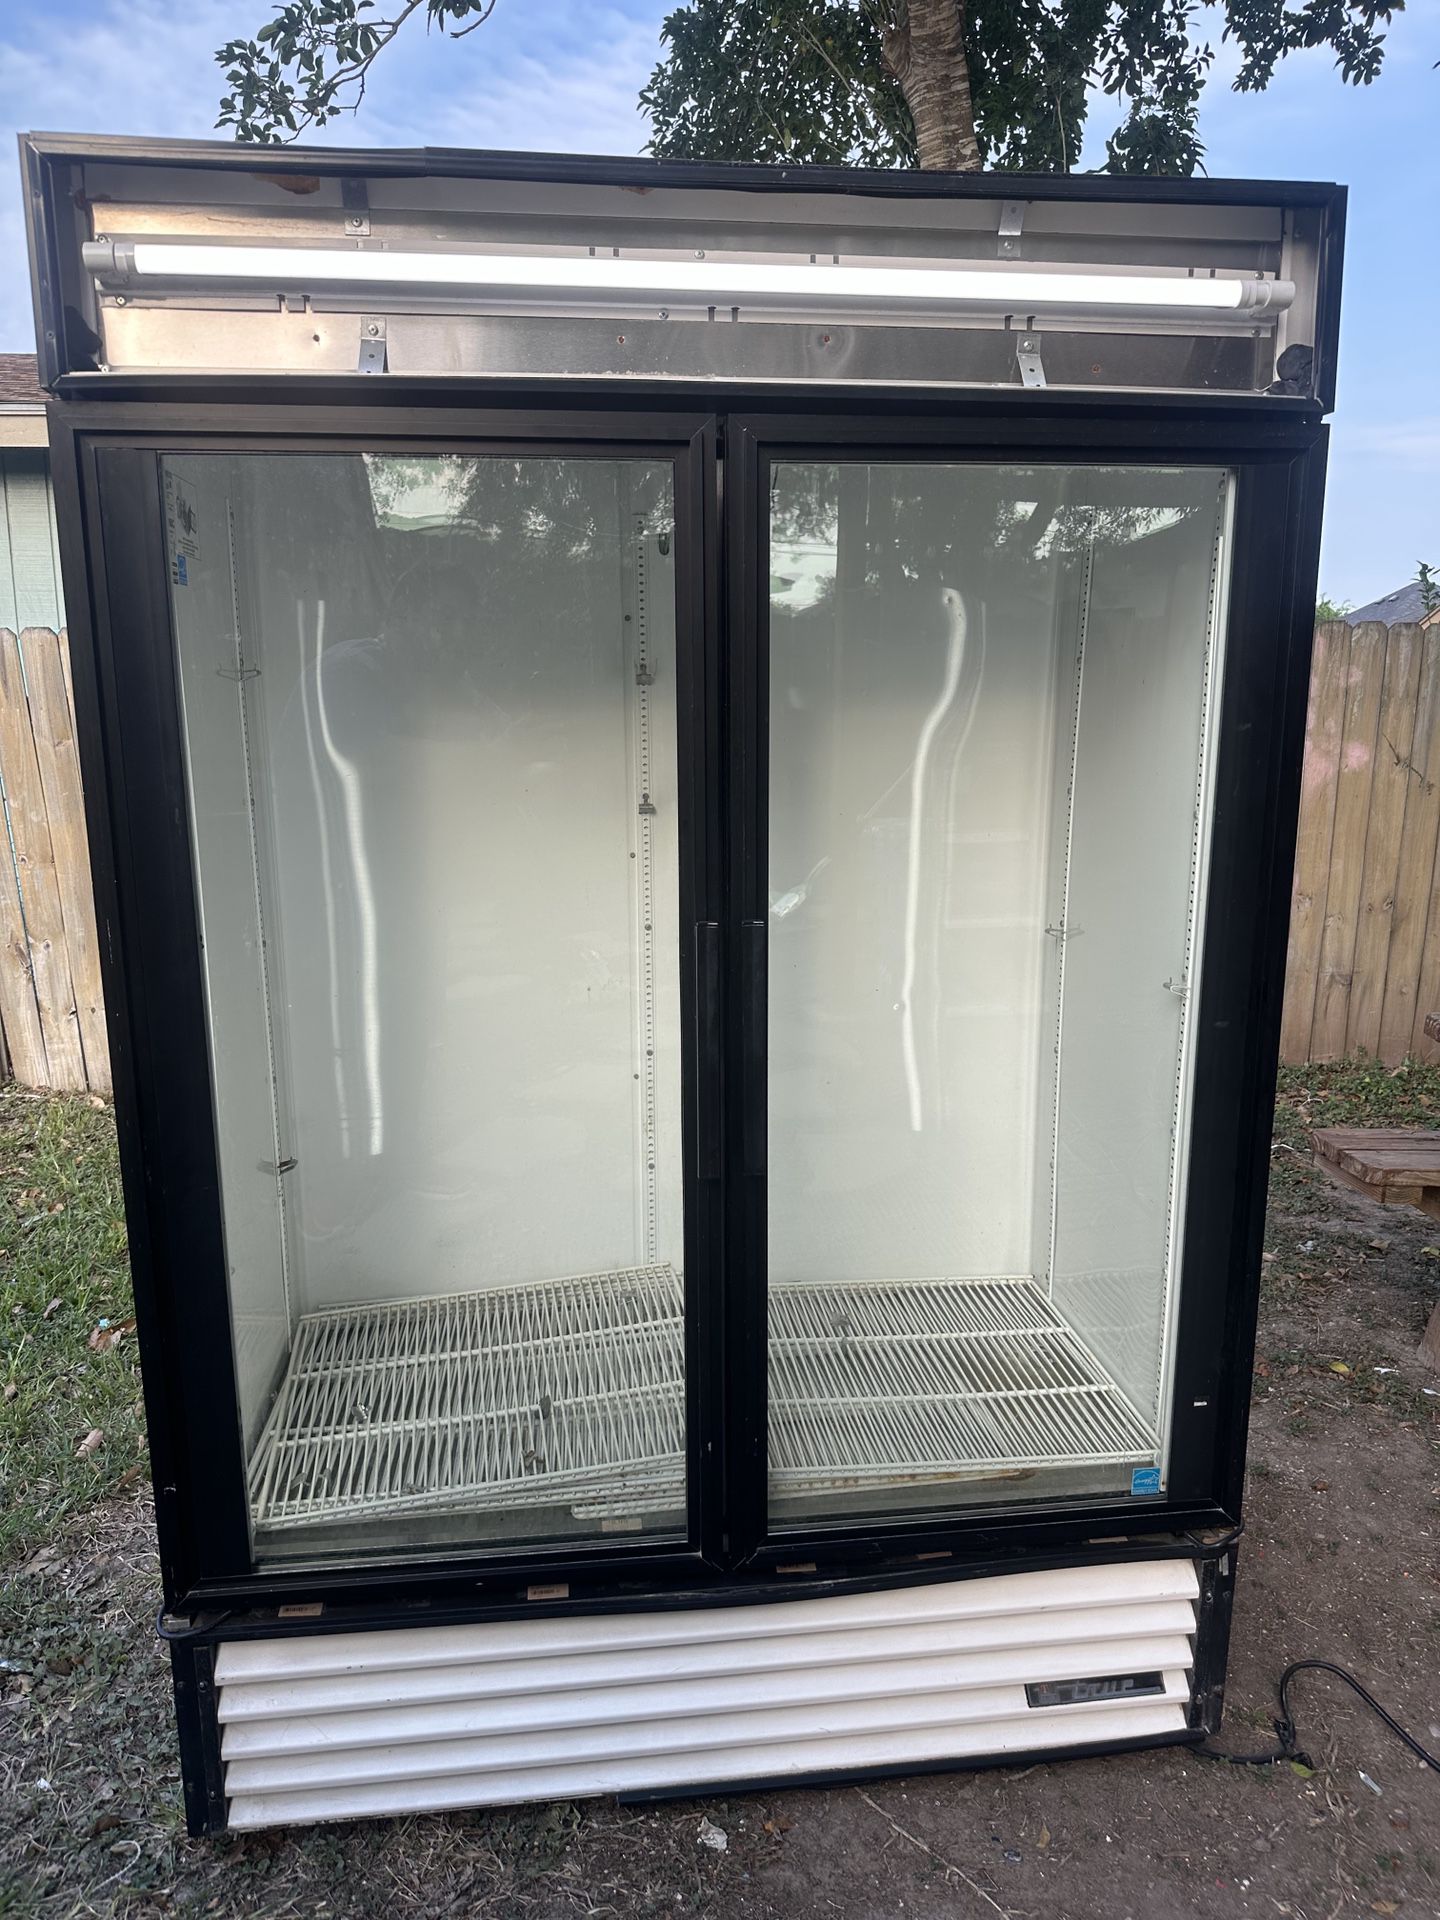 True Commercial Refrigerator 